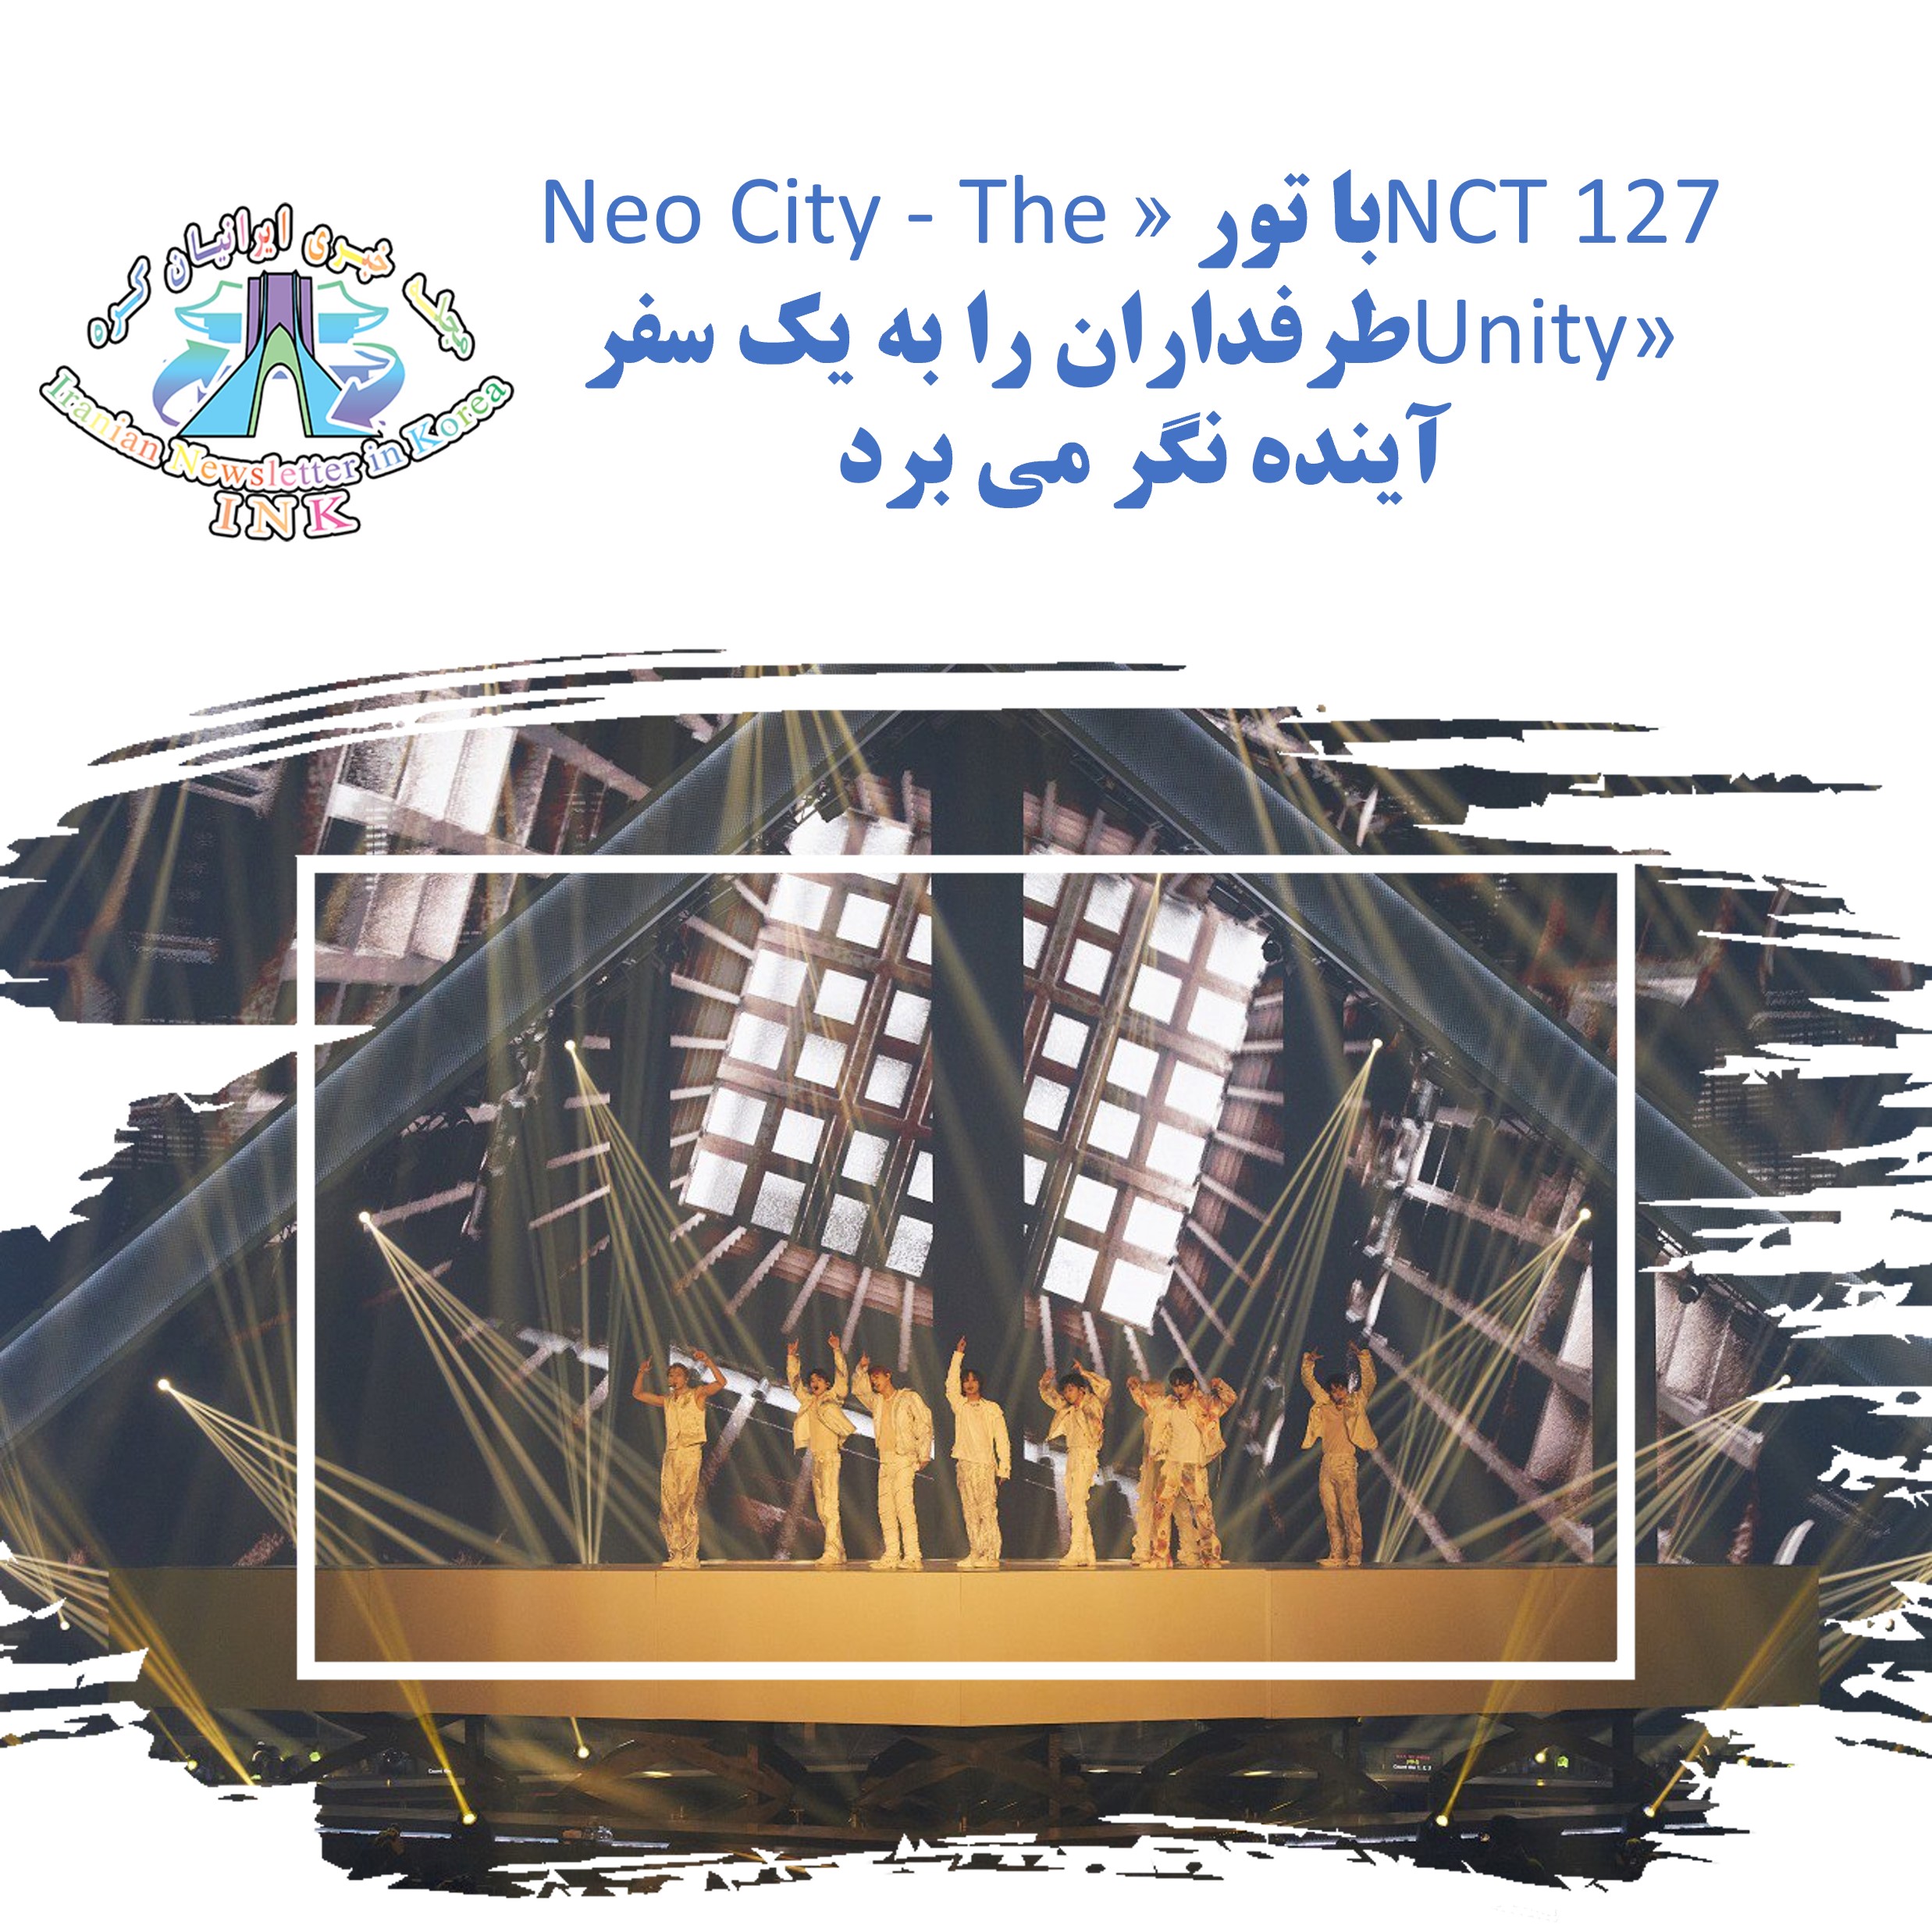 NCT 127 با تور «Neo City - The Unity» طرفداران را به یک سفر آینده نگر می برد